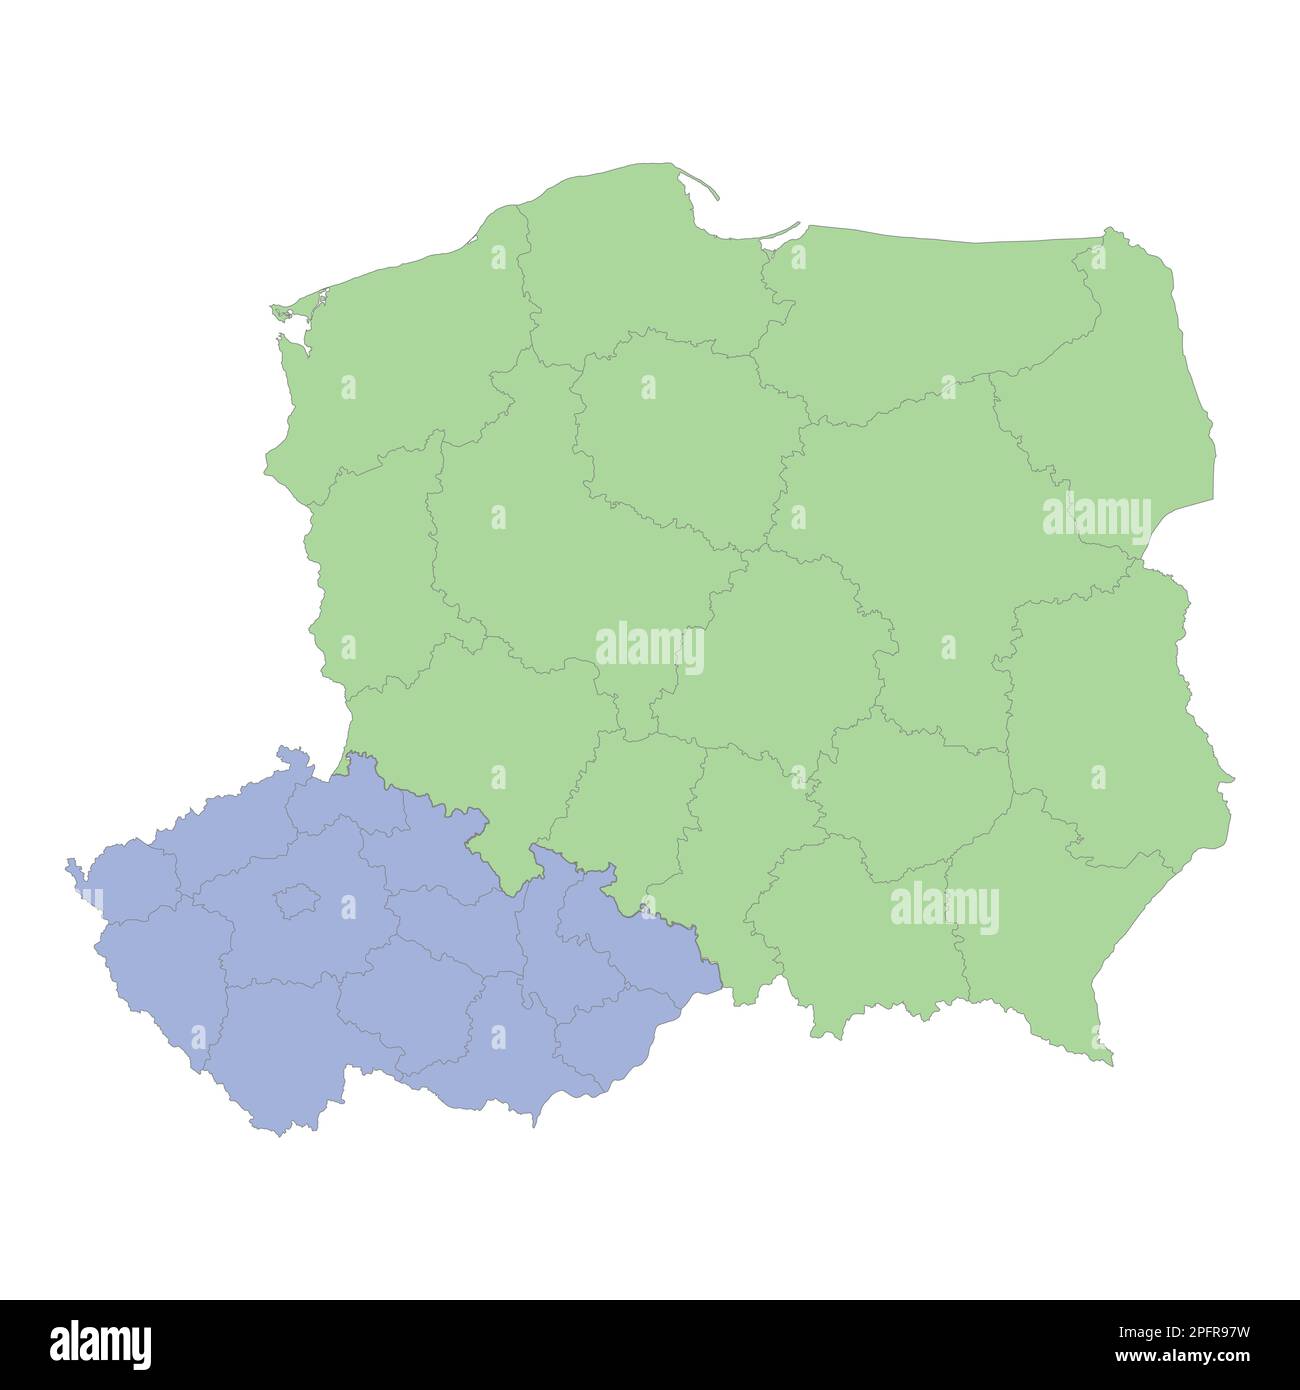 Mappa politica di alta qualità della Polonia e della repubblica Ceca con i confini delle regioni o province. Illustrazione vettoriale Illustrazione Vettoriale